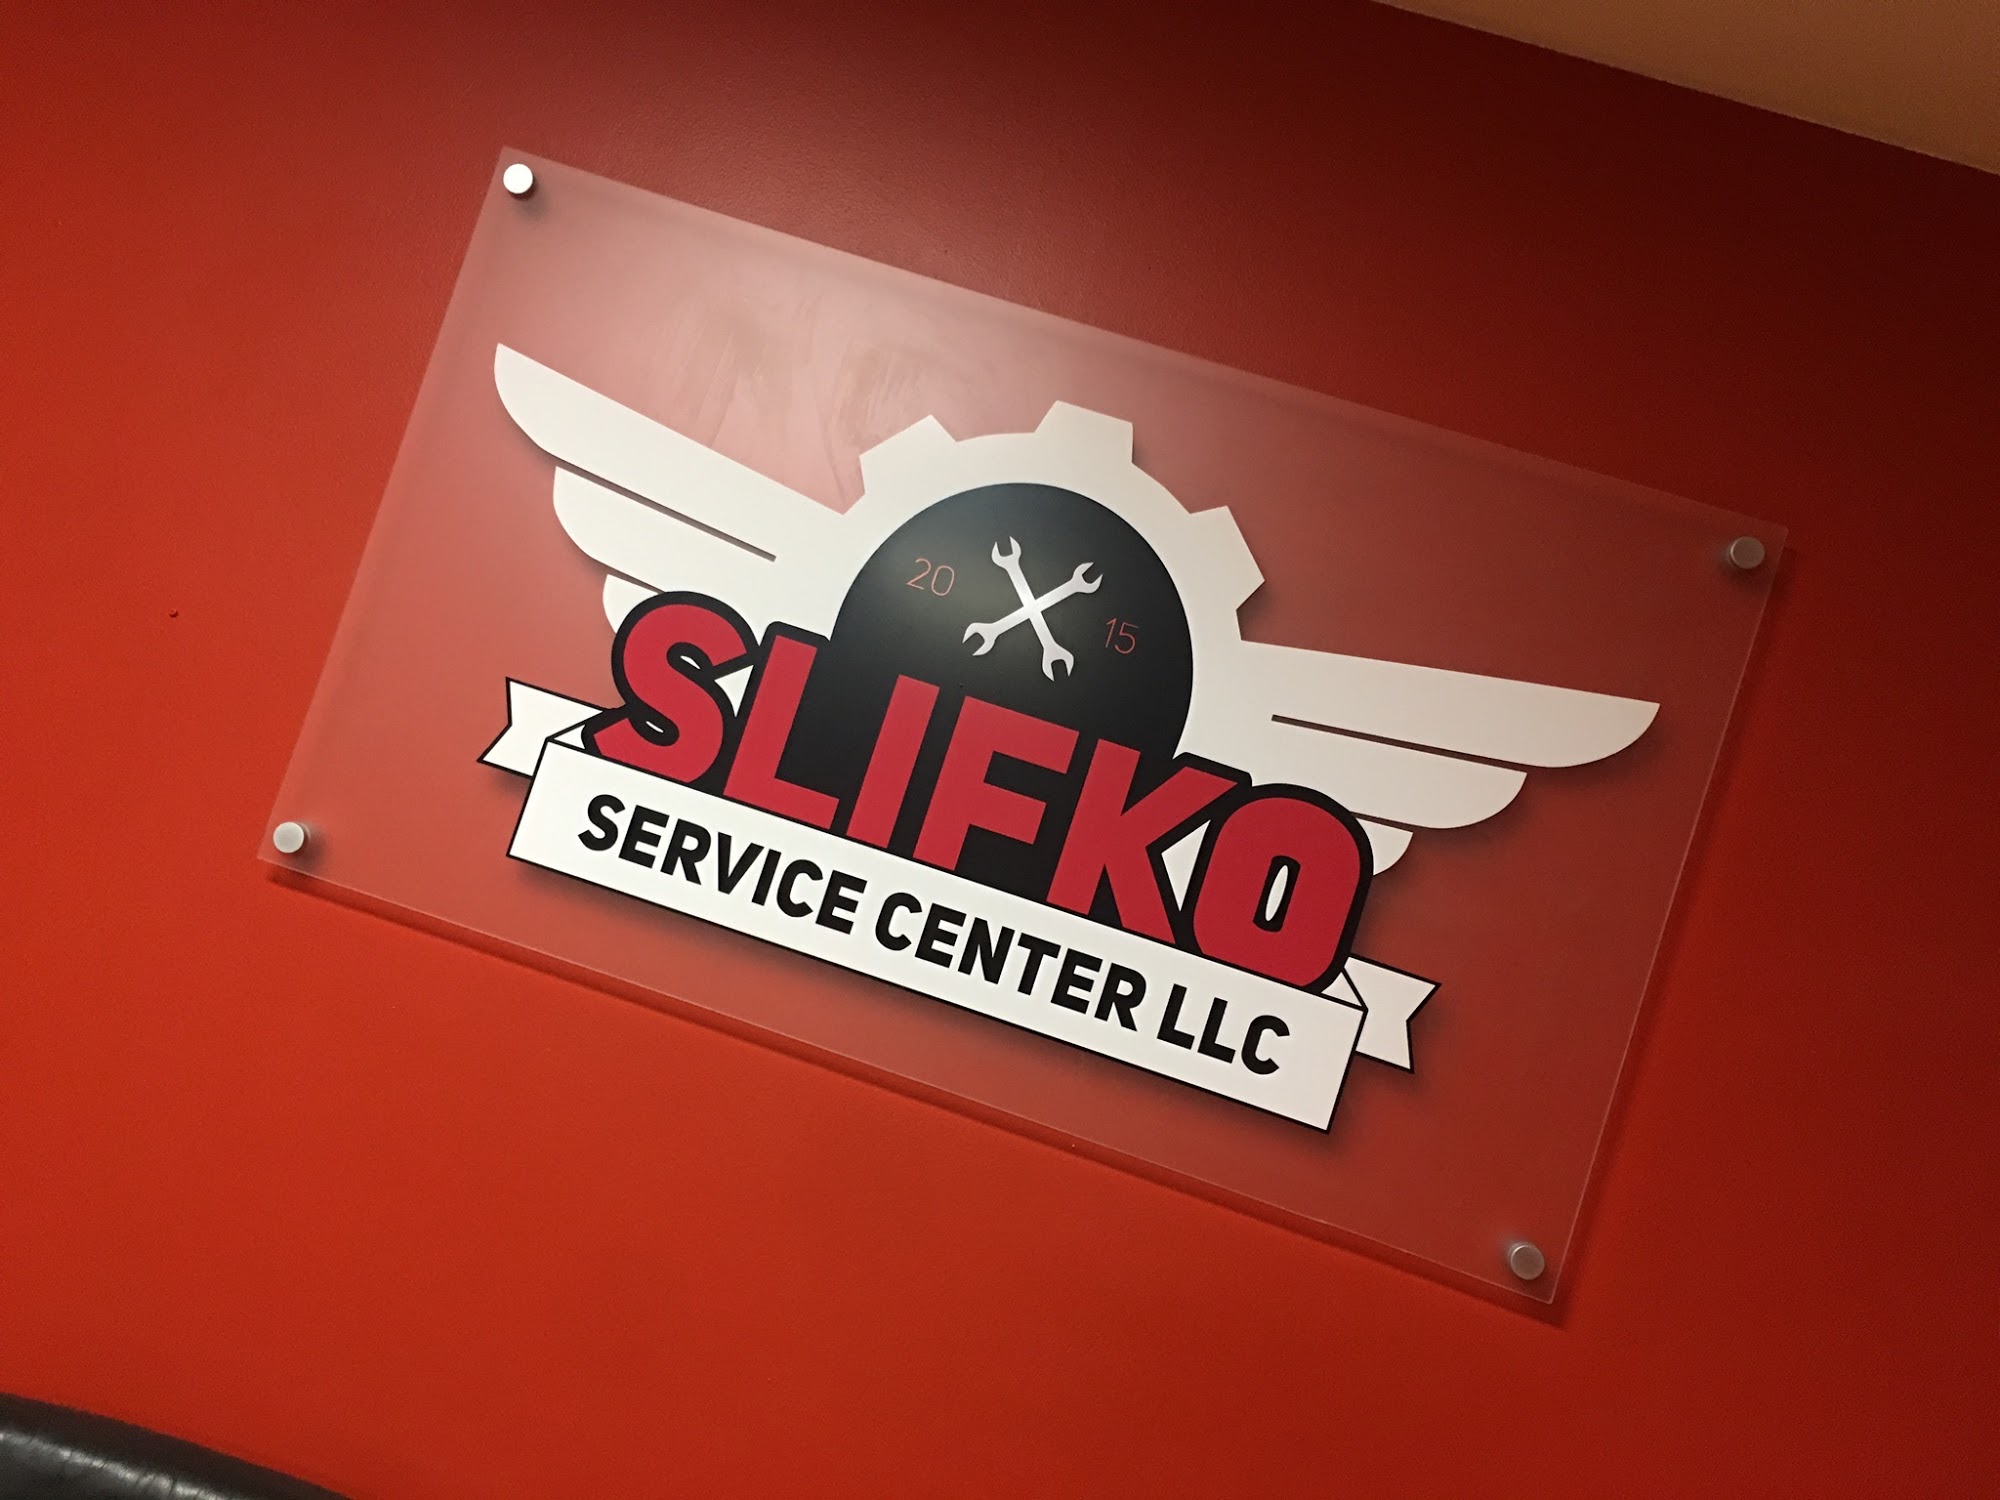 Slifko Service Center LLC